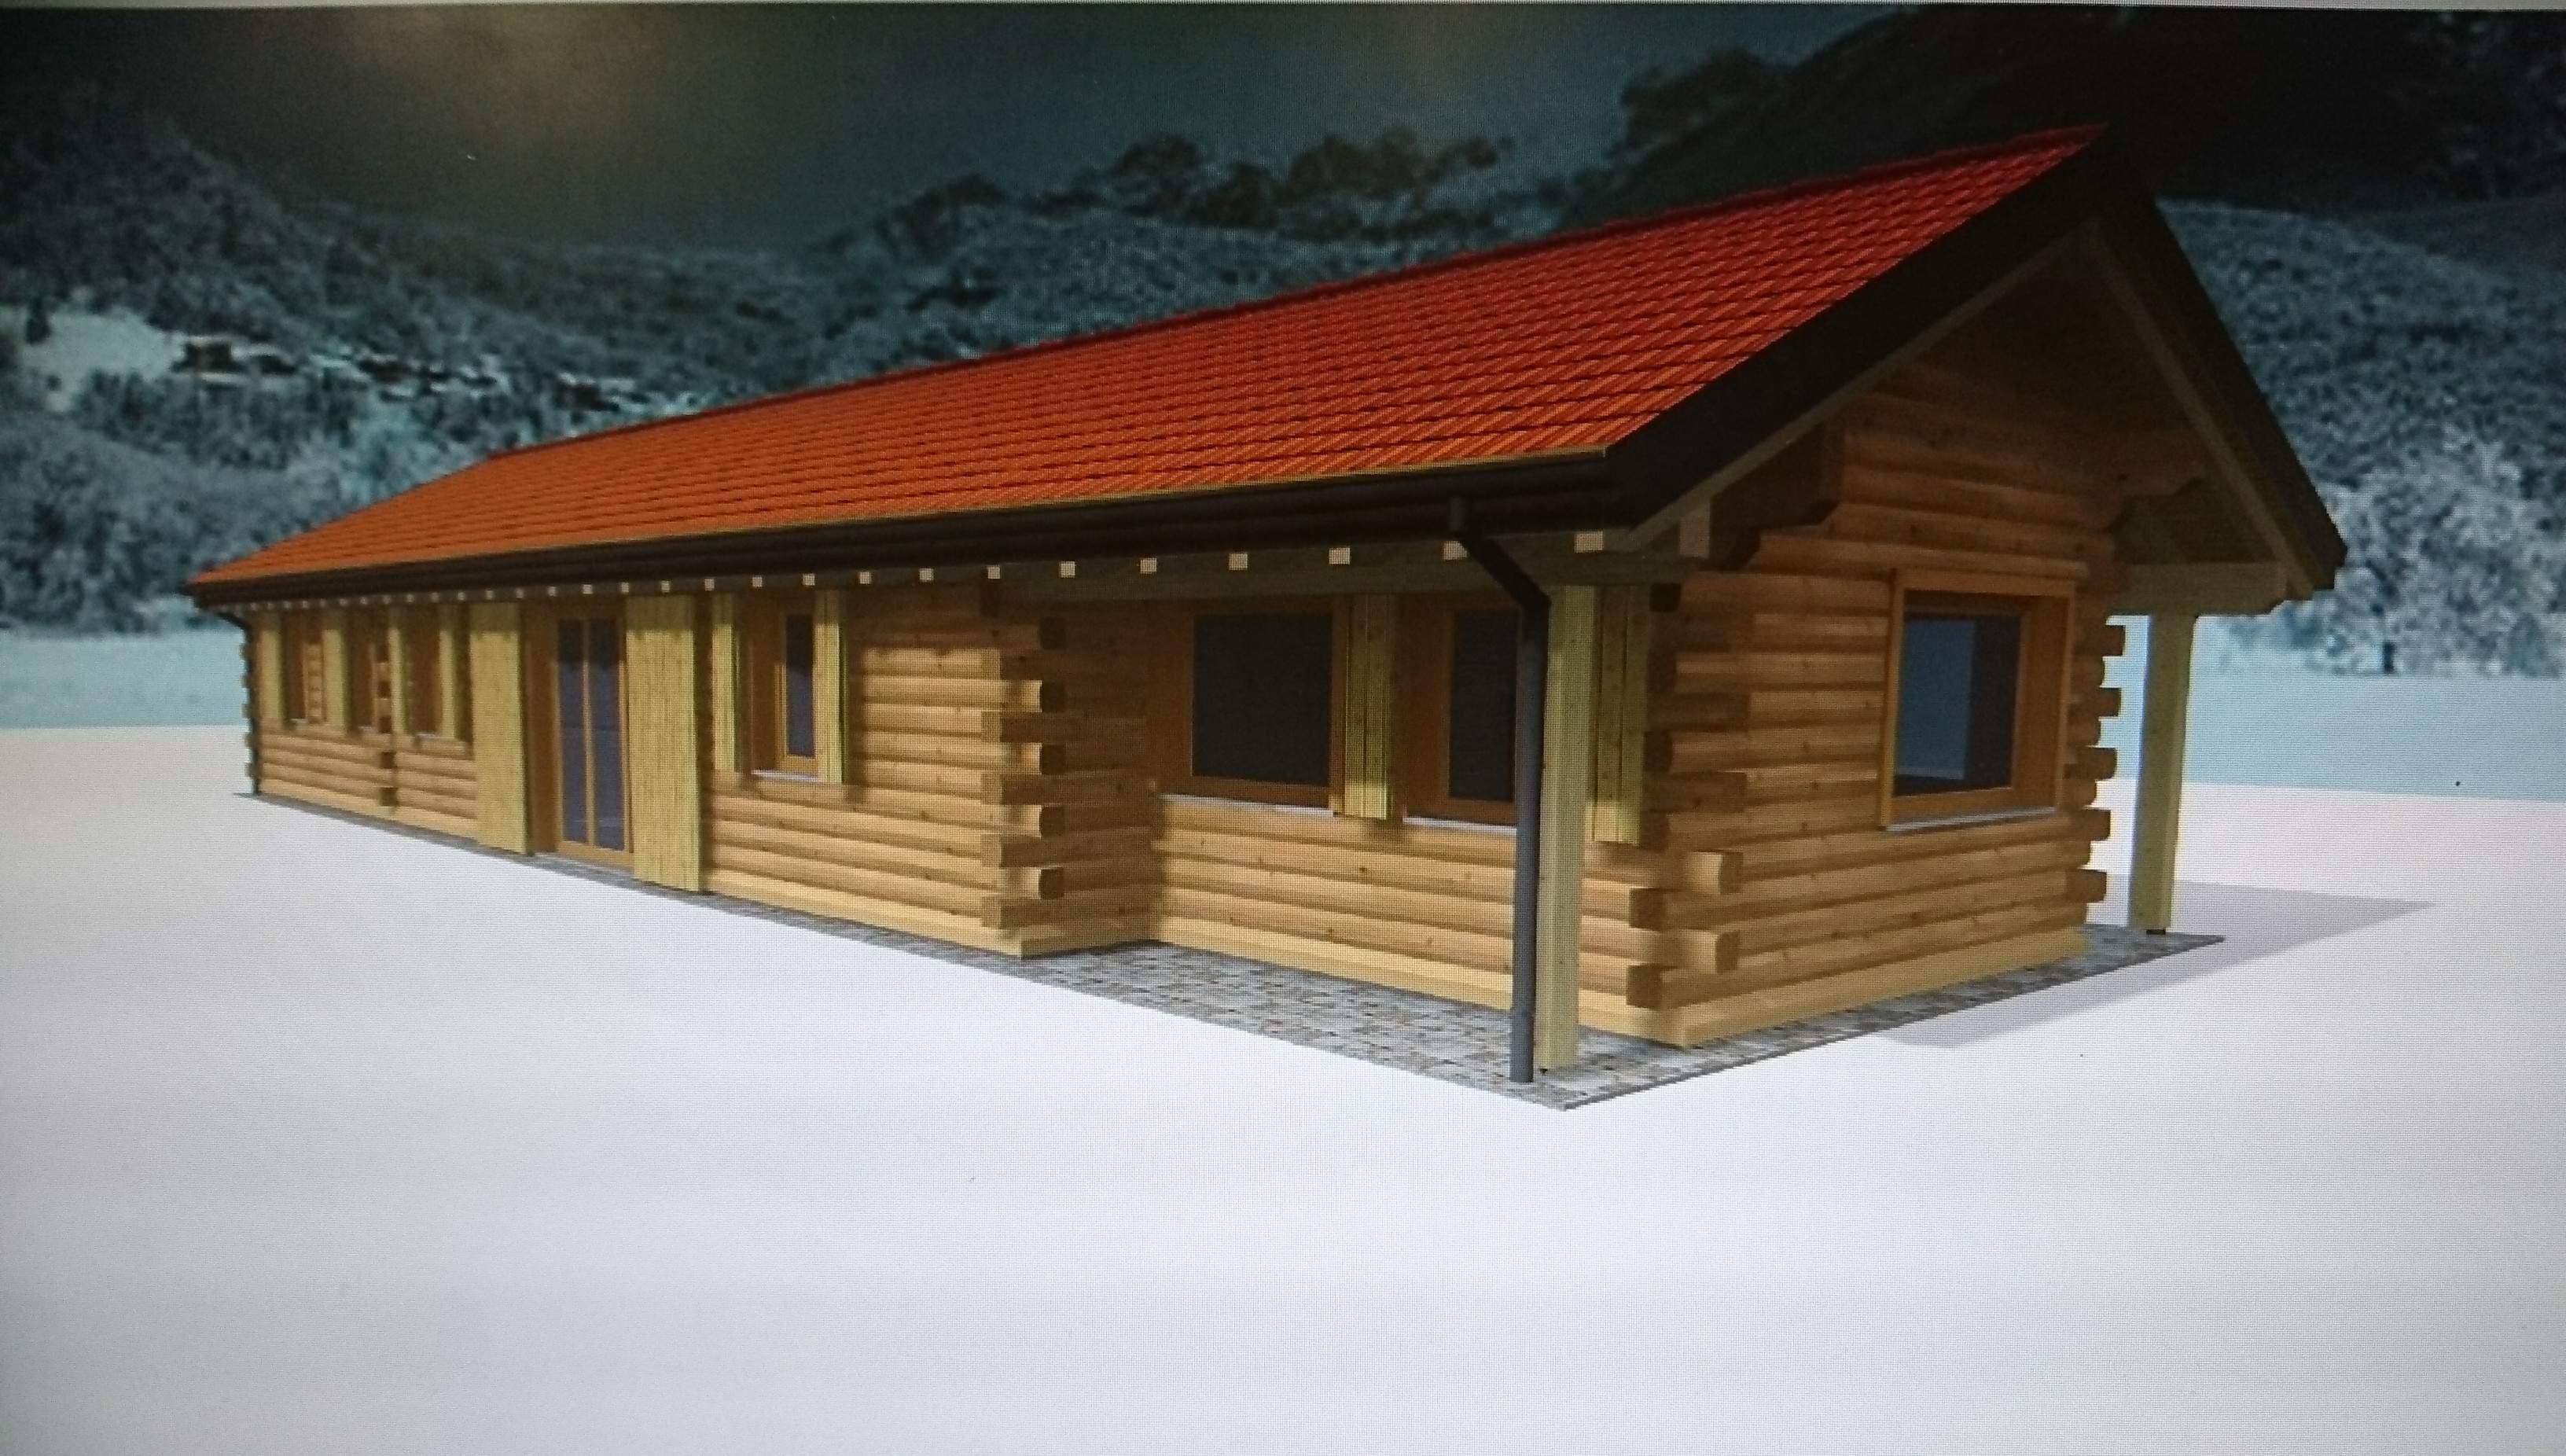 Struttura blok-house - immagine di presentazione rendering con fotoinserimento